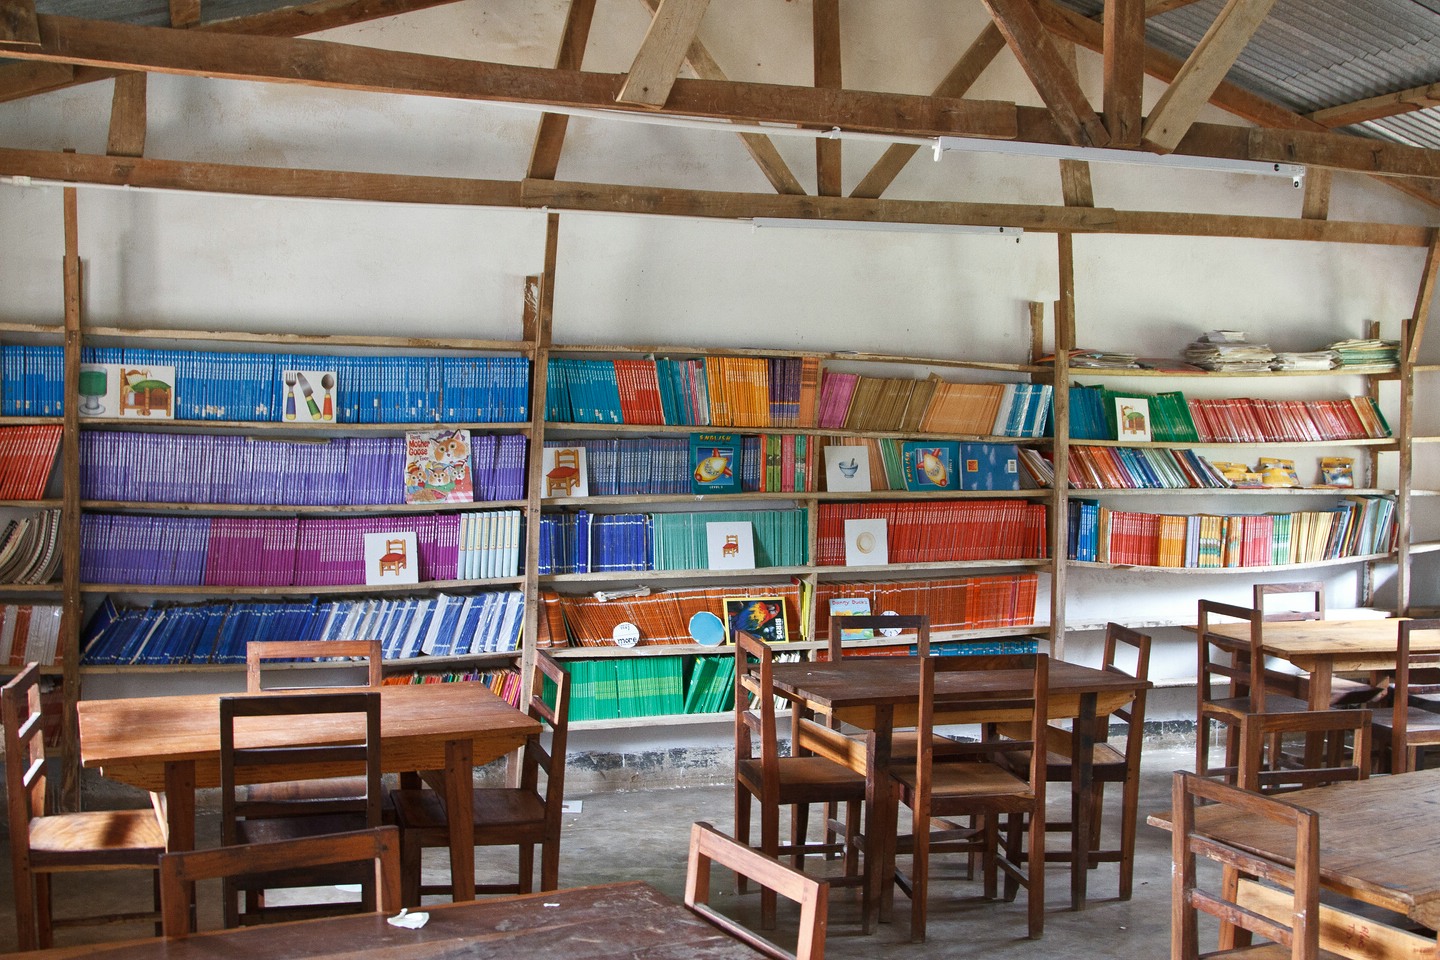 Bandawe Primary School